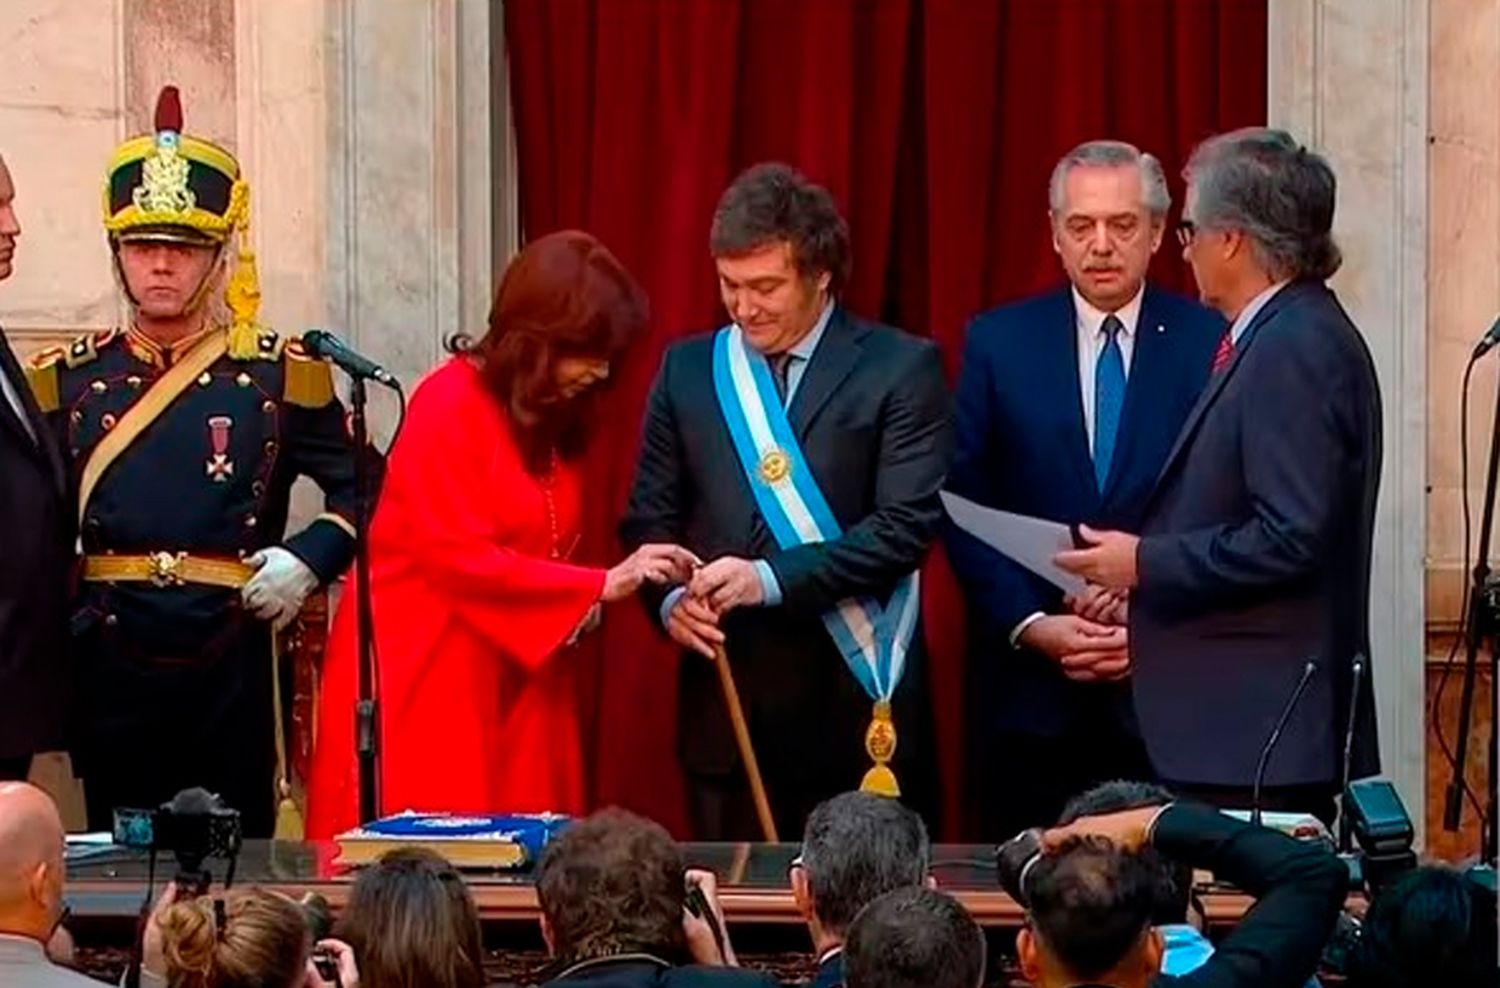 A qué se debió la sonrisa cómplice entre Cristina Kirchner y Javier Milei